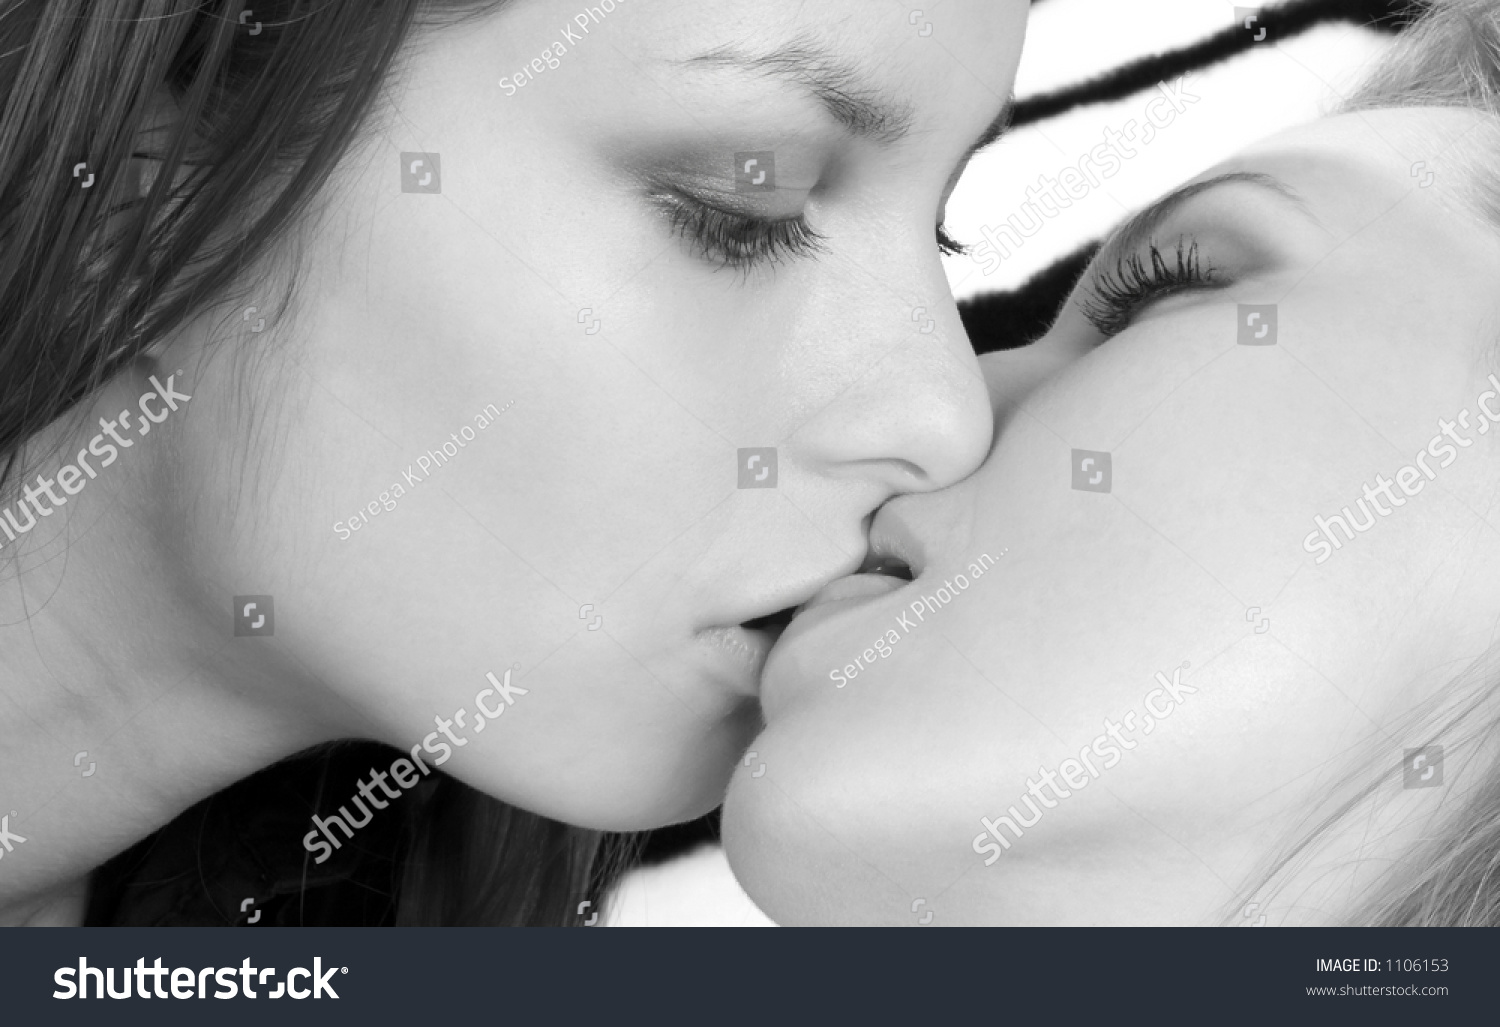 Мамочки лесбиянки целуются между собой и параллельно ласкают друг дружке писечки